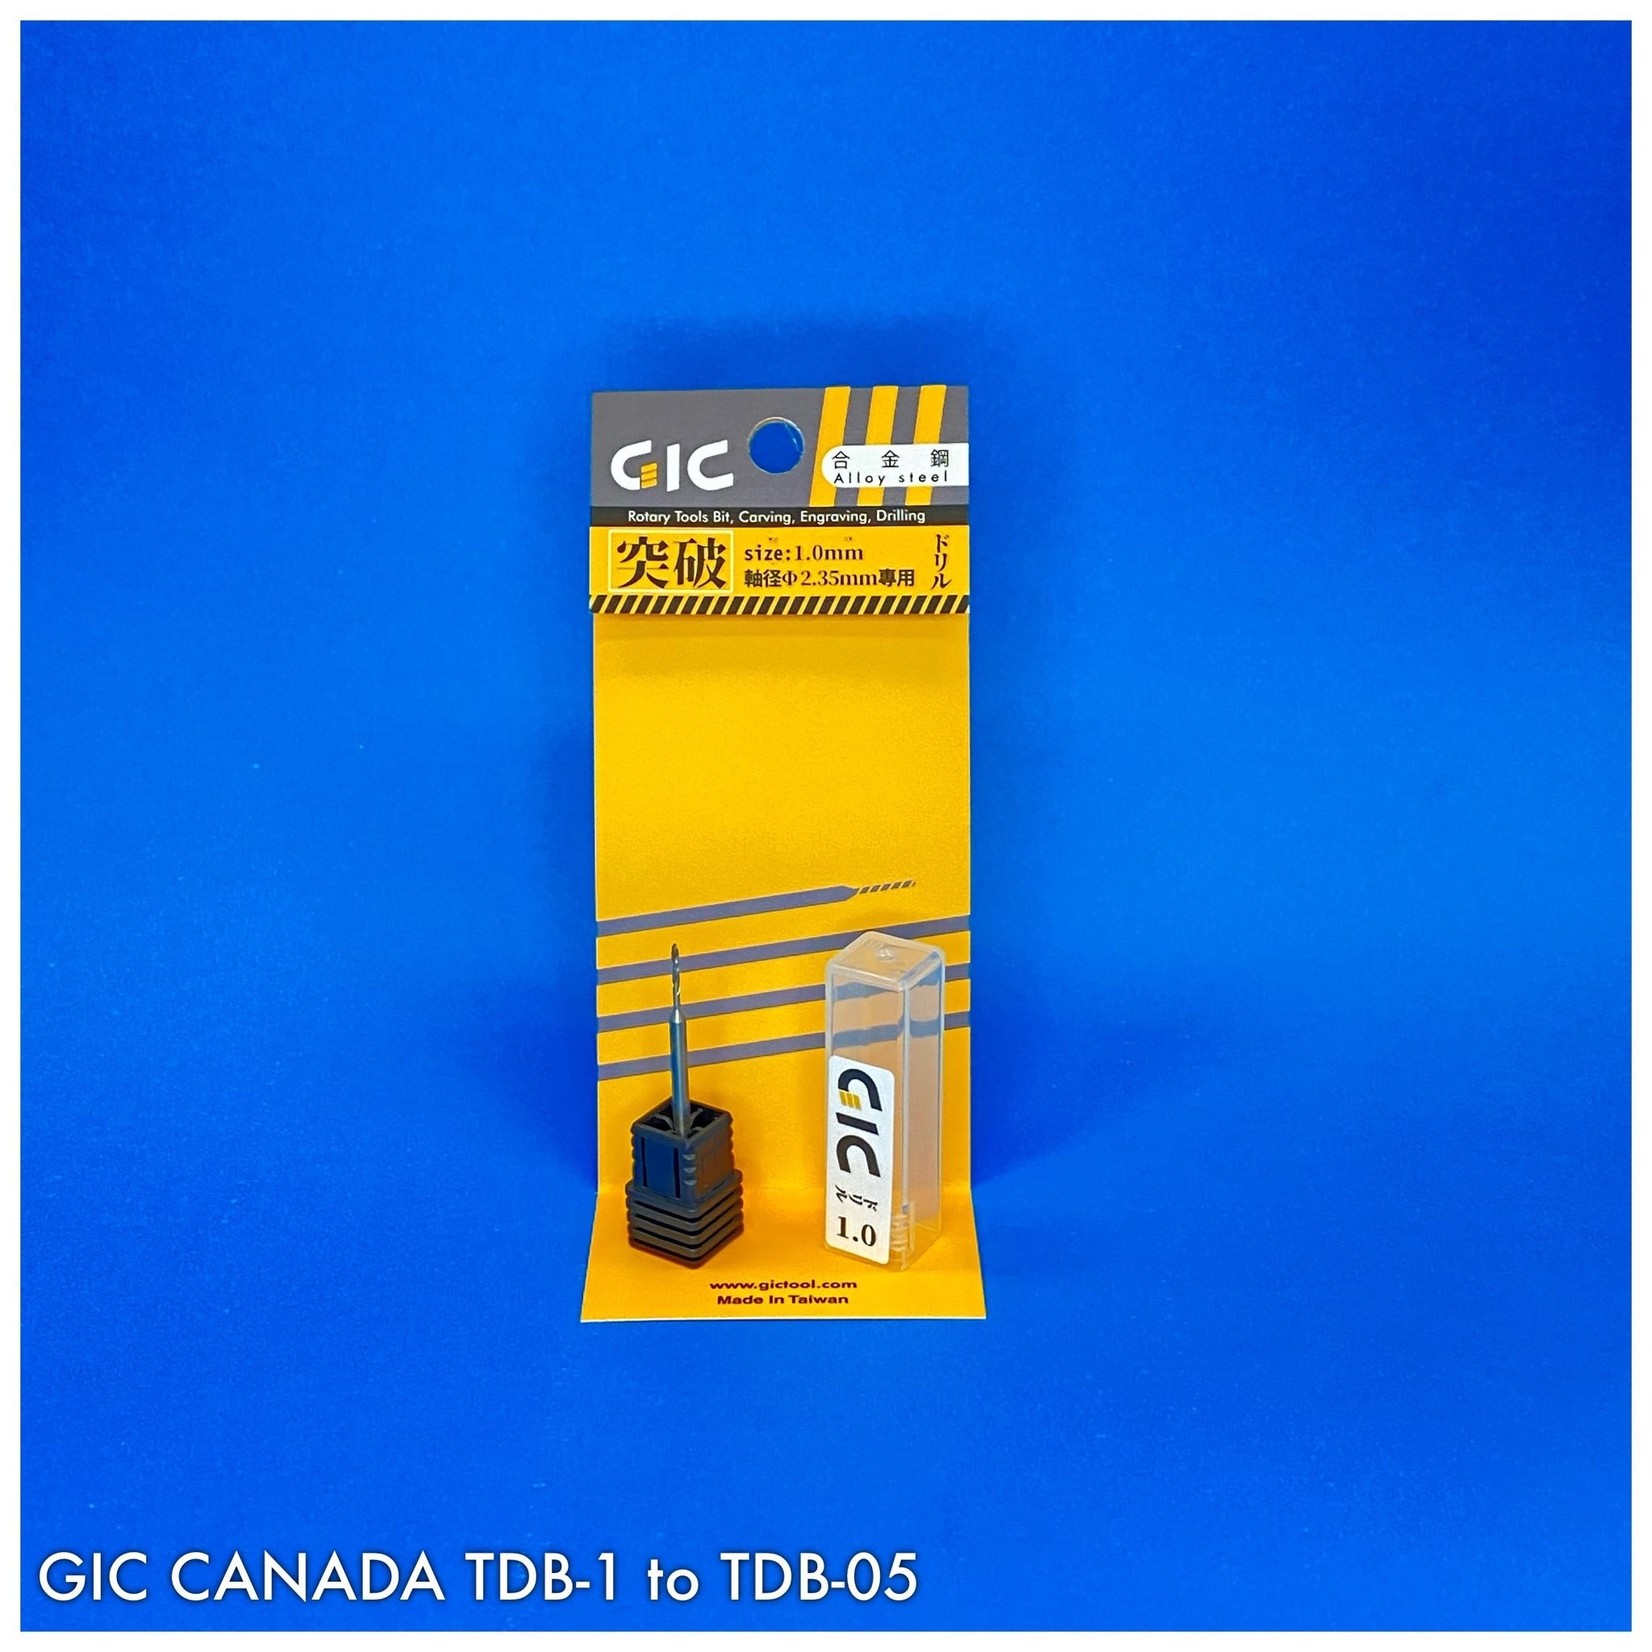 GIC GIC TDB-05 ALLOY STEEL DRILL BIT 2.0 MM